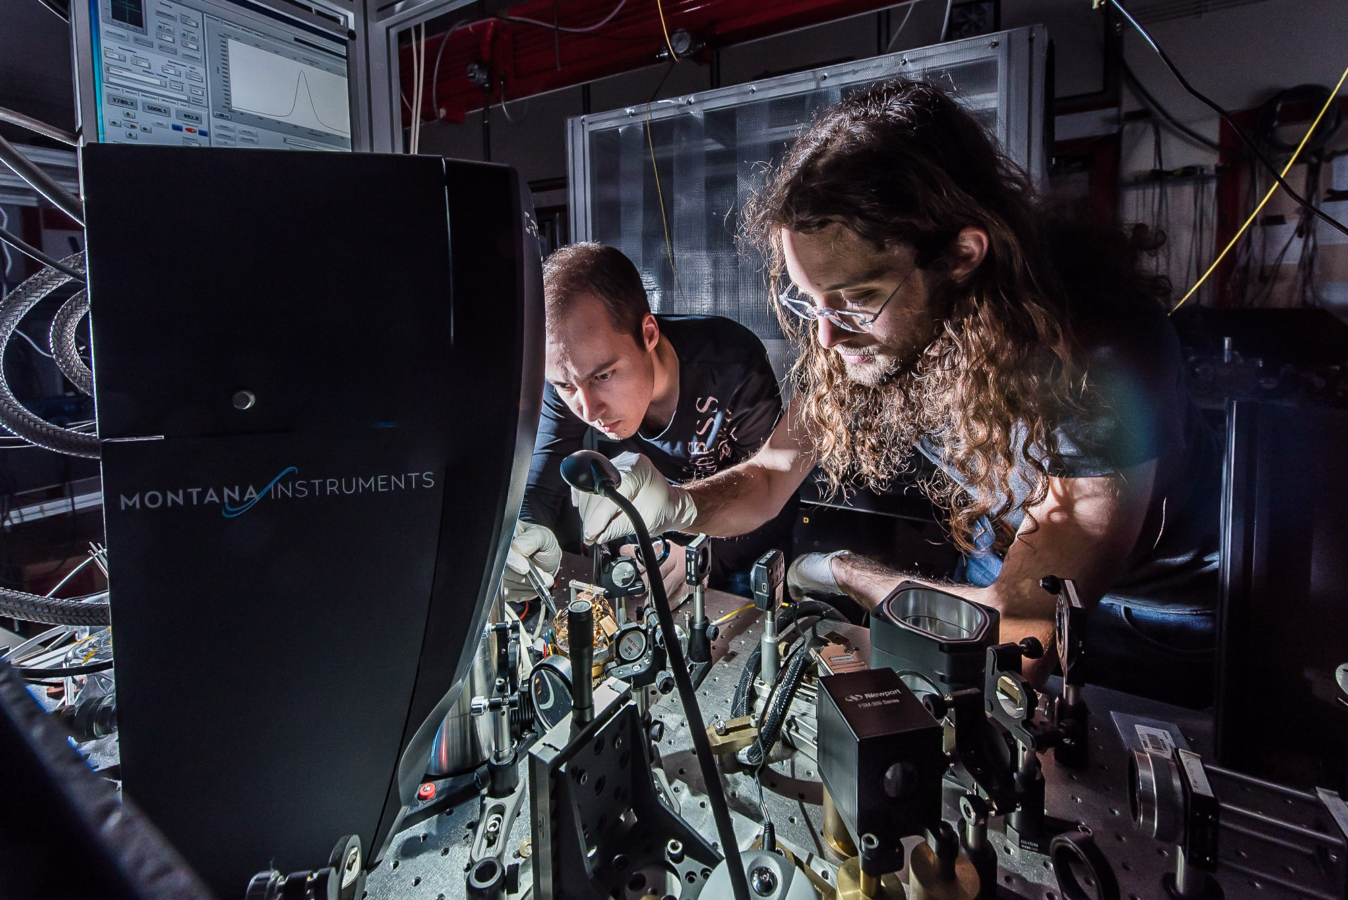 ENS. Département de physique. Doctorants théoriciens au travail Département de physique. Adrien Jeantet au premier plan devant un dispositif expérimental comprenant un crysostat et un laser servant à étudier l'emission de "grains de lumière" ou photons par des nanotubes de carbone.